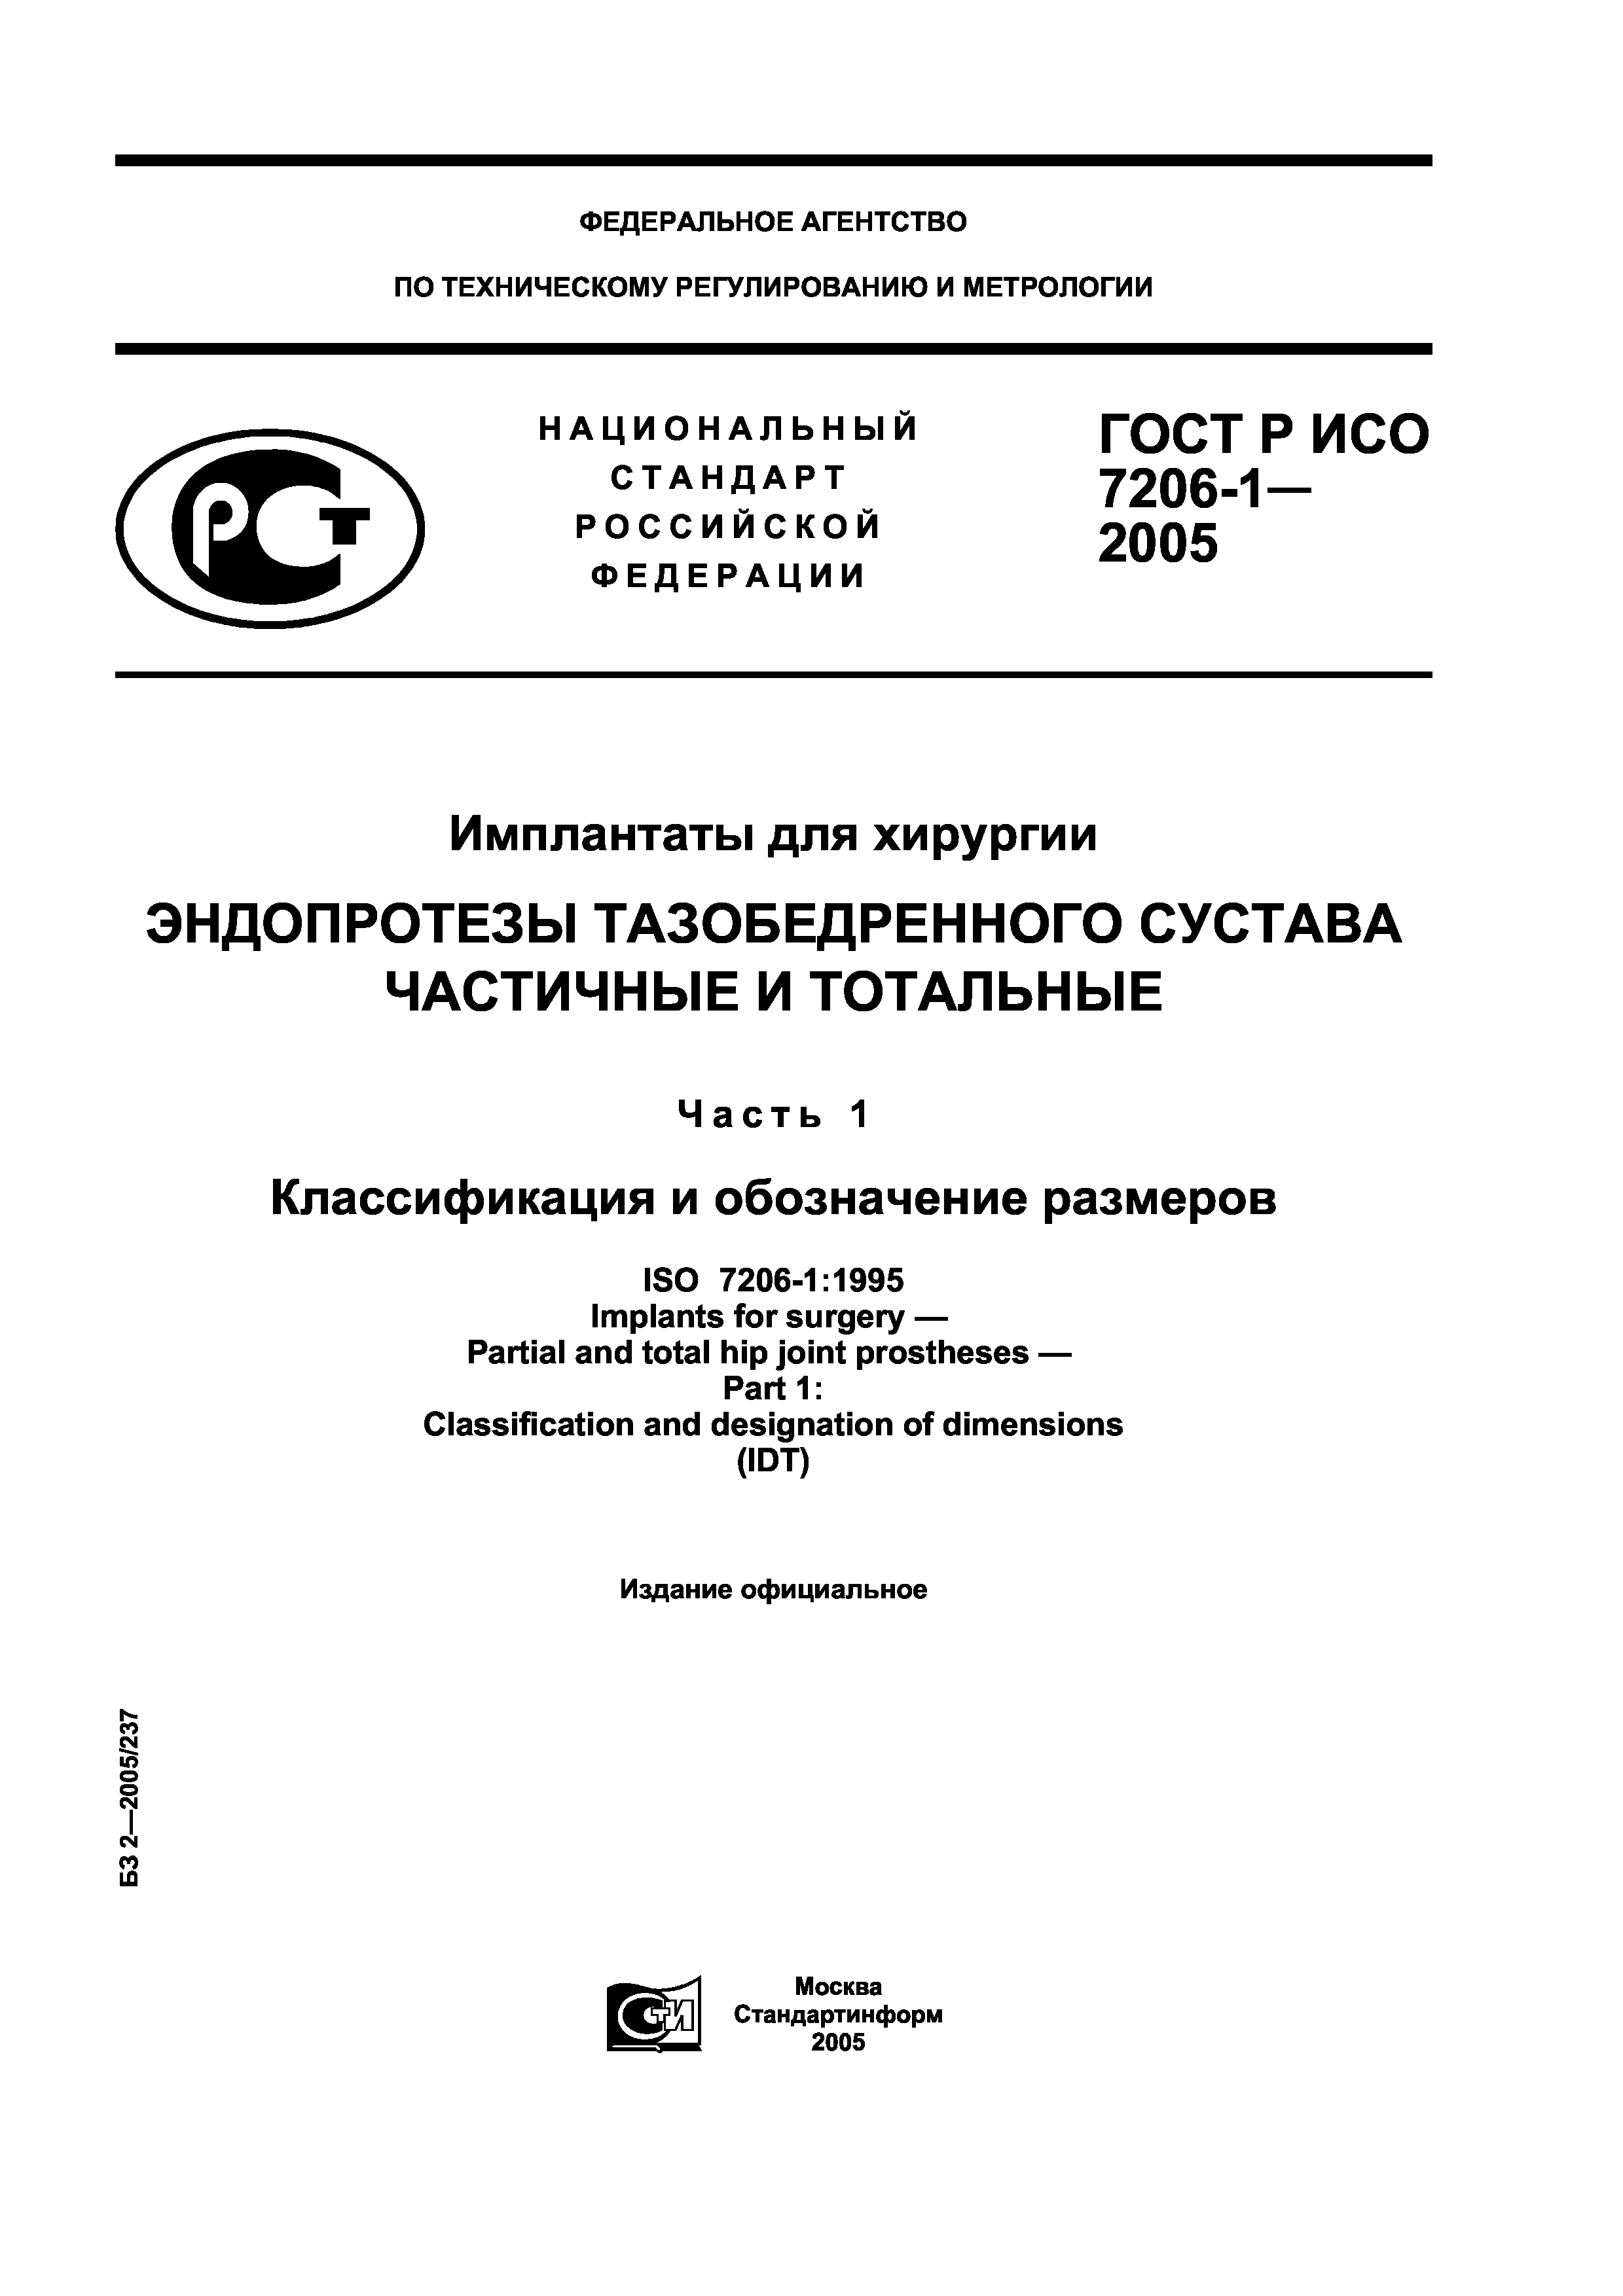 ГОСТ Р ИСО 7206-1-2005